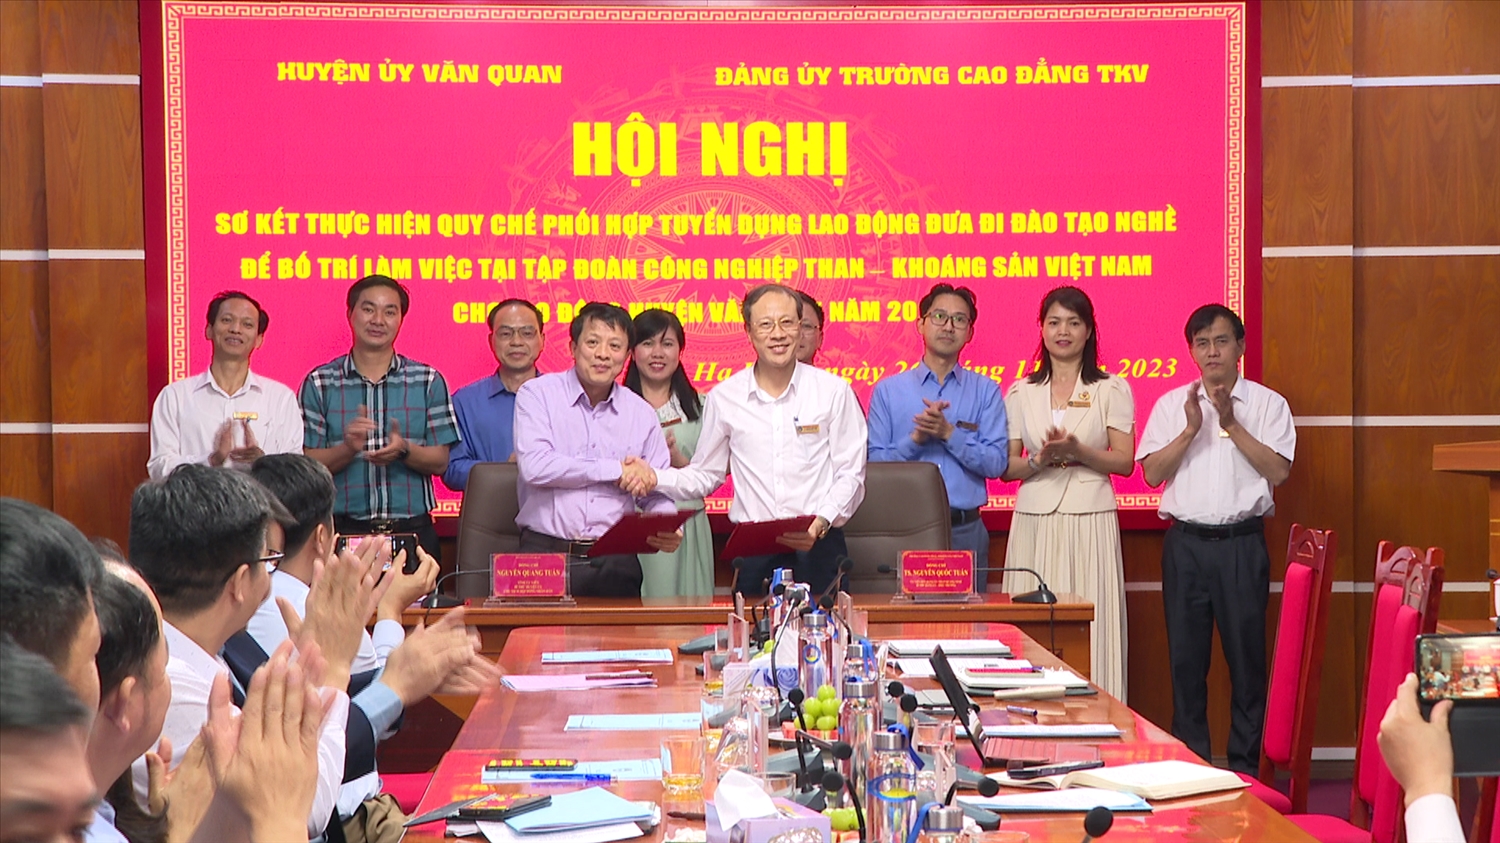 Huyện ủy Văn Quan và Đảng ủy Trường Cao đẳng Than – Khoáng sản Việt Nam ký thực hiện Quy chế phối hợp về công tác đào tạo nghề giải quyết việc làm cho lao động địa phương năm 2024.